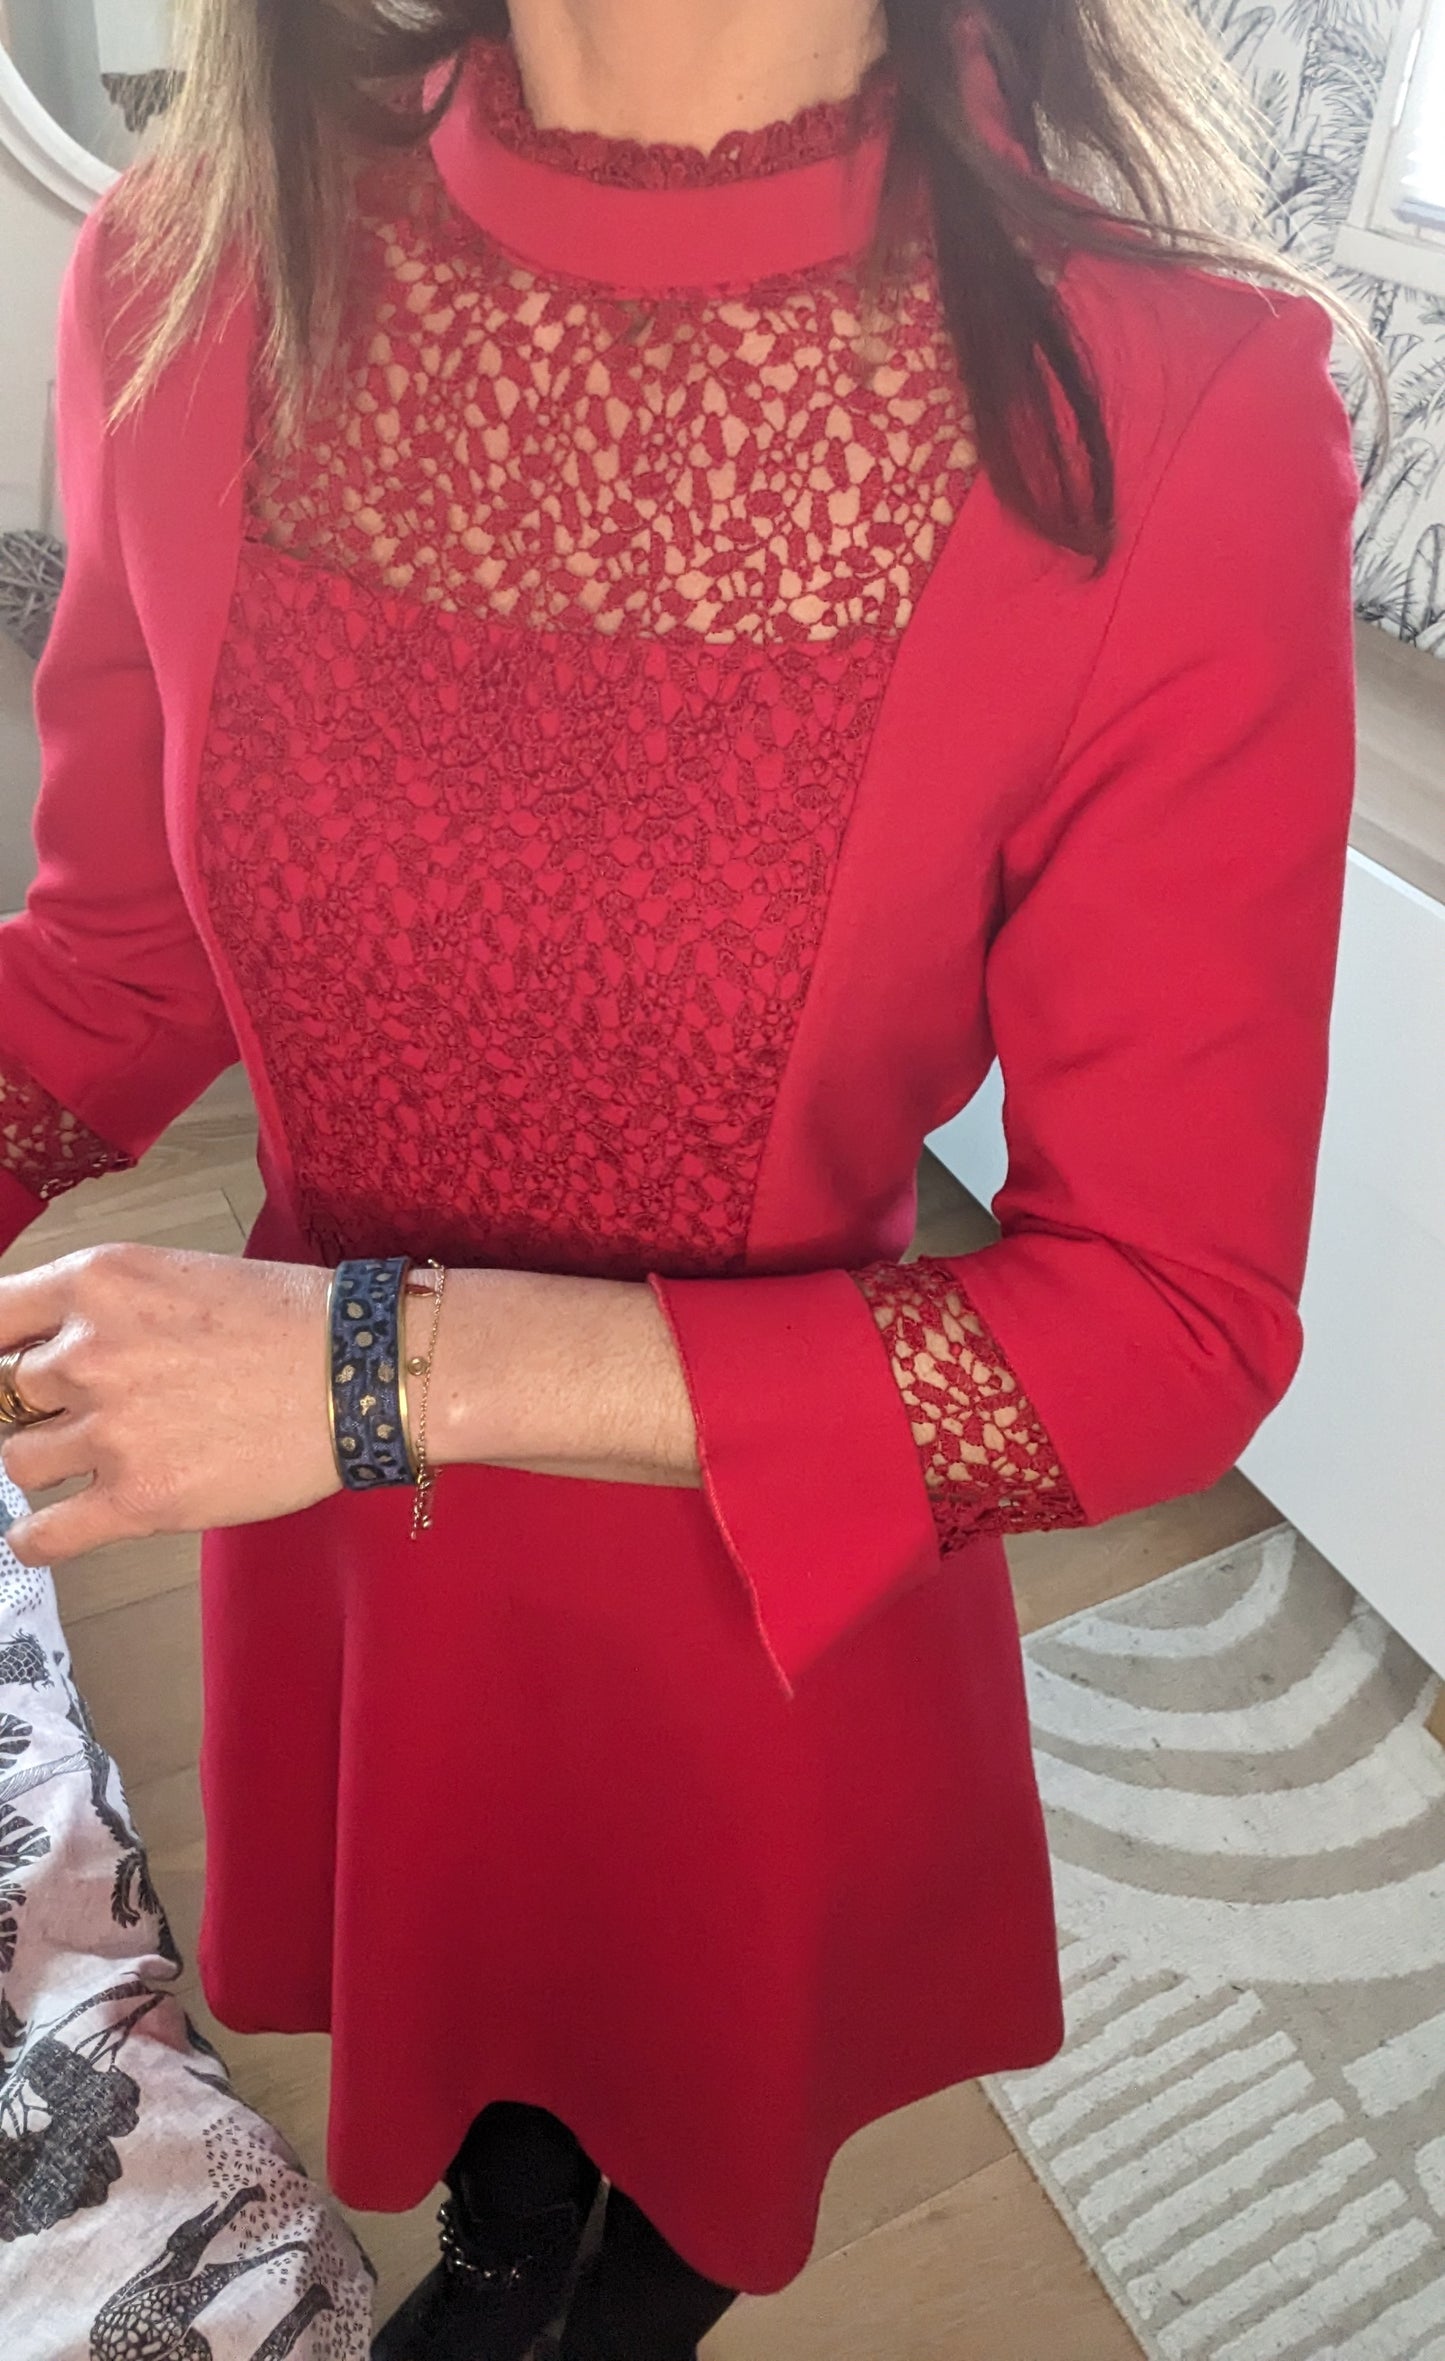 Robe plastron dentelle rouge - Zara - 34